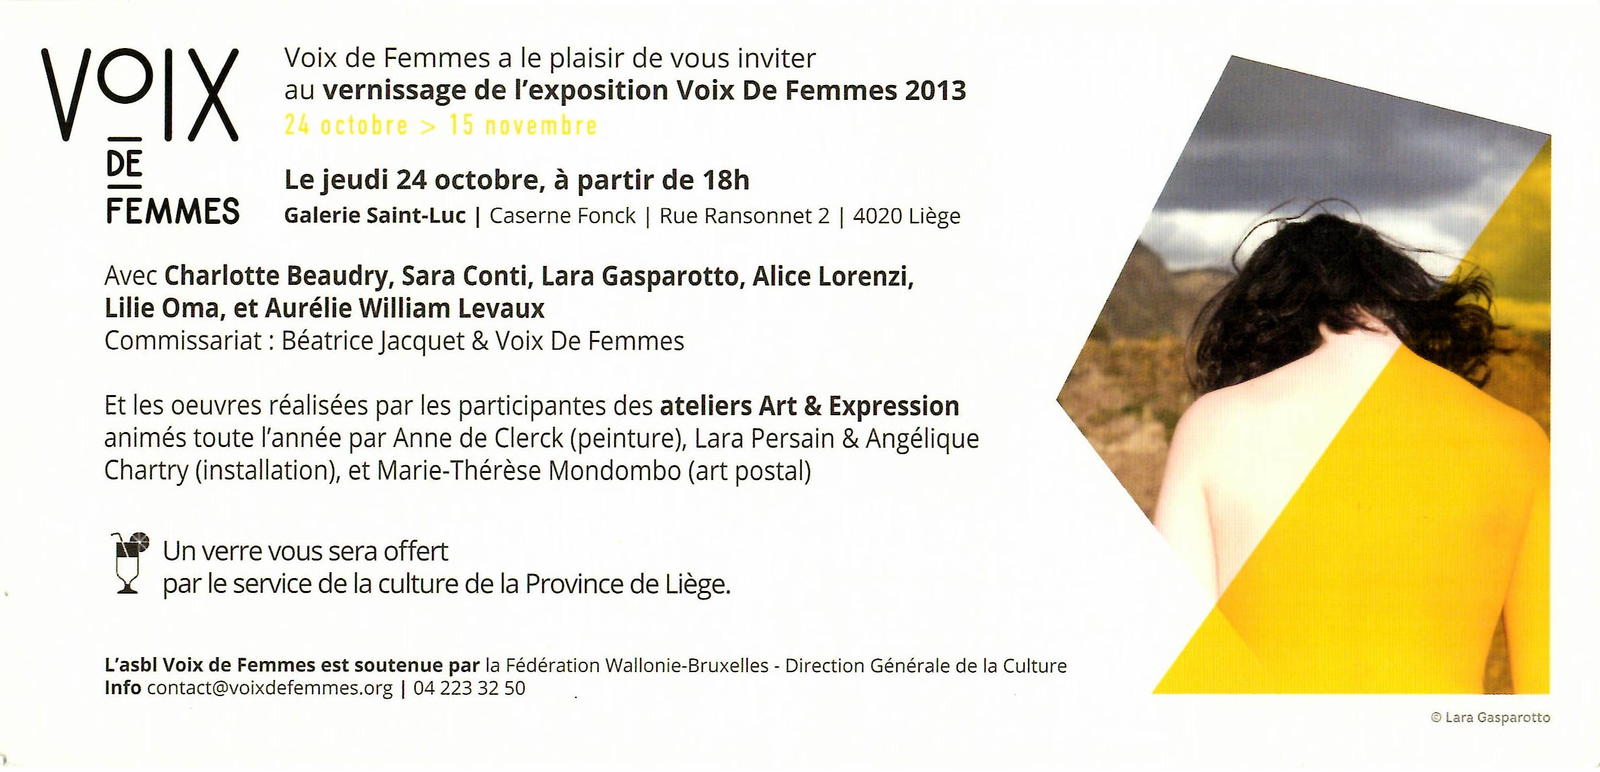 Flyer du vernissage de l'exposition de Voix de Femmes 2013